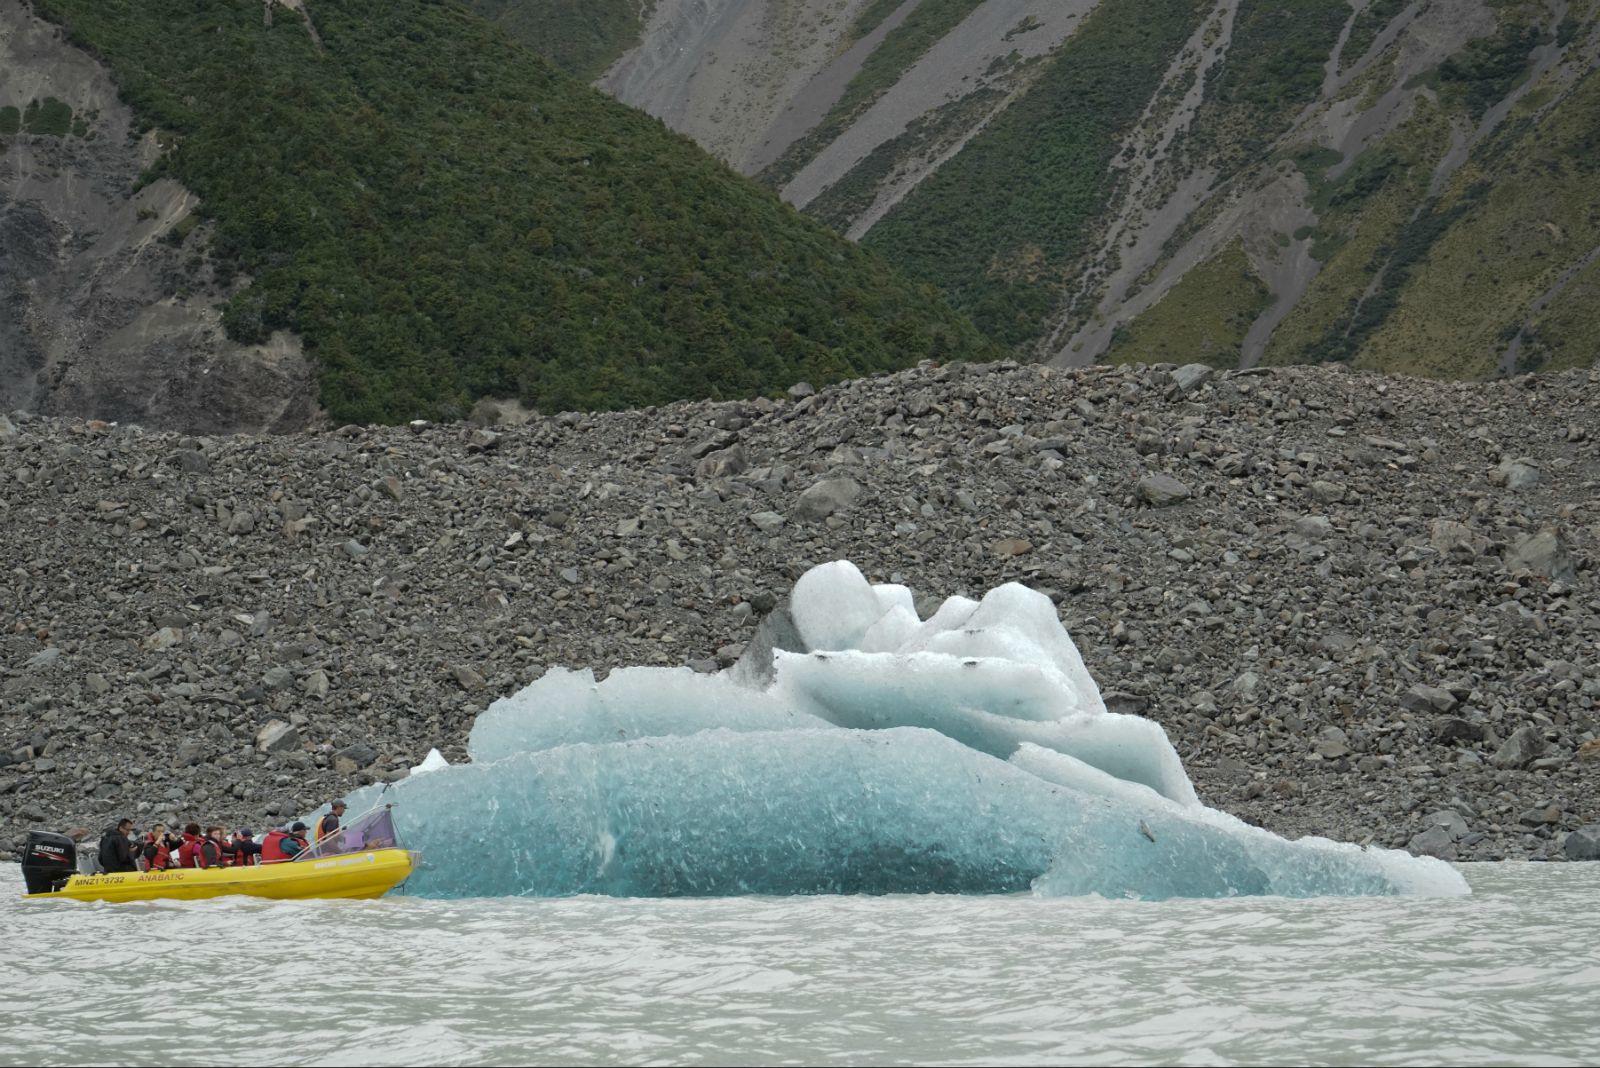 冰河探险之旅：冰川消融流淌时带着岩石粉末汇入塔斯曼河，形成独特的奶白色冰河。乘坐冲锋艇驰骋于冰山之间